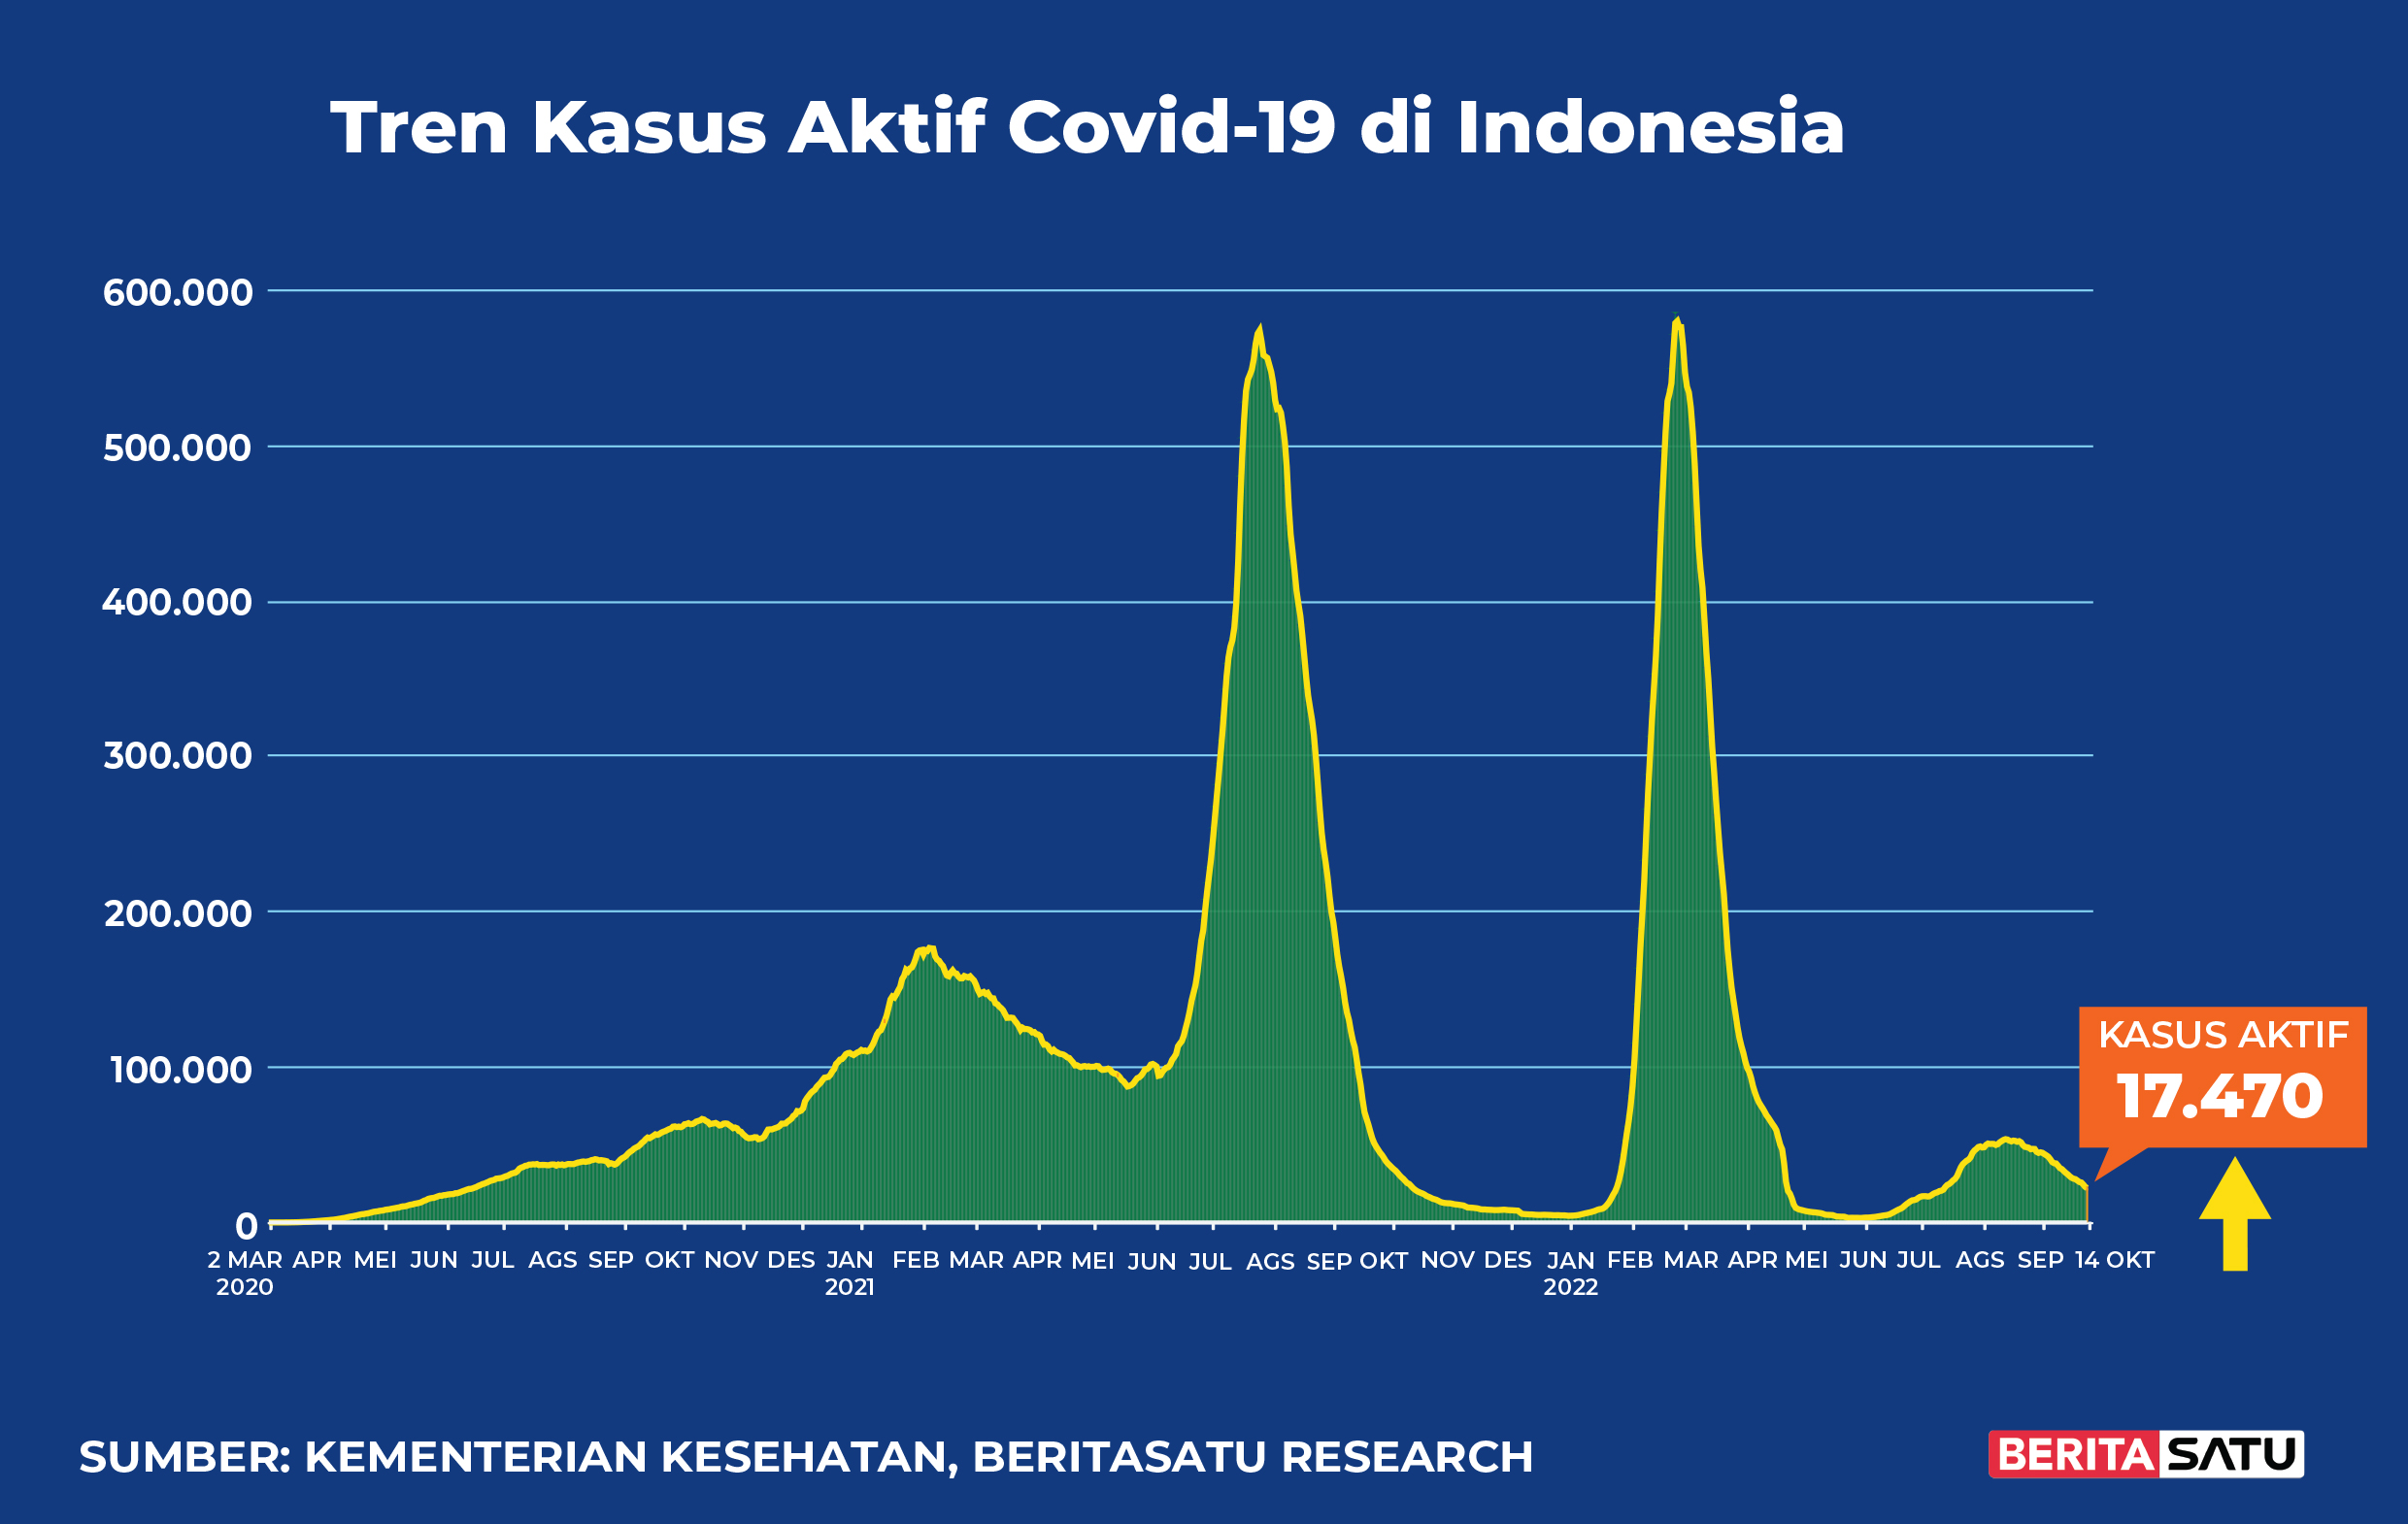 Kasus Aktif Covid-19 di Indonesia sampai 14 Oktober 2022